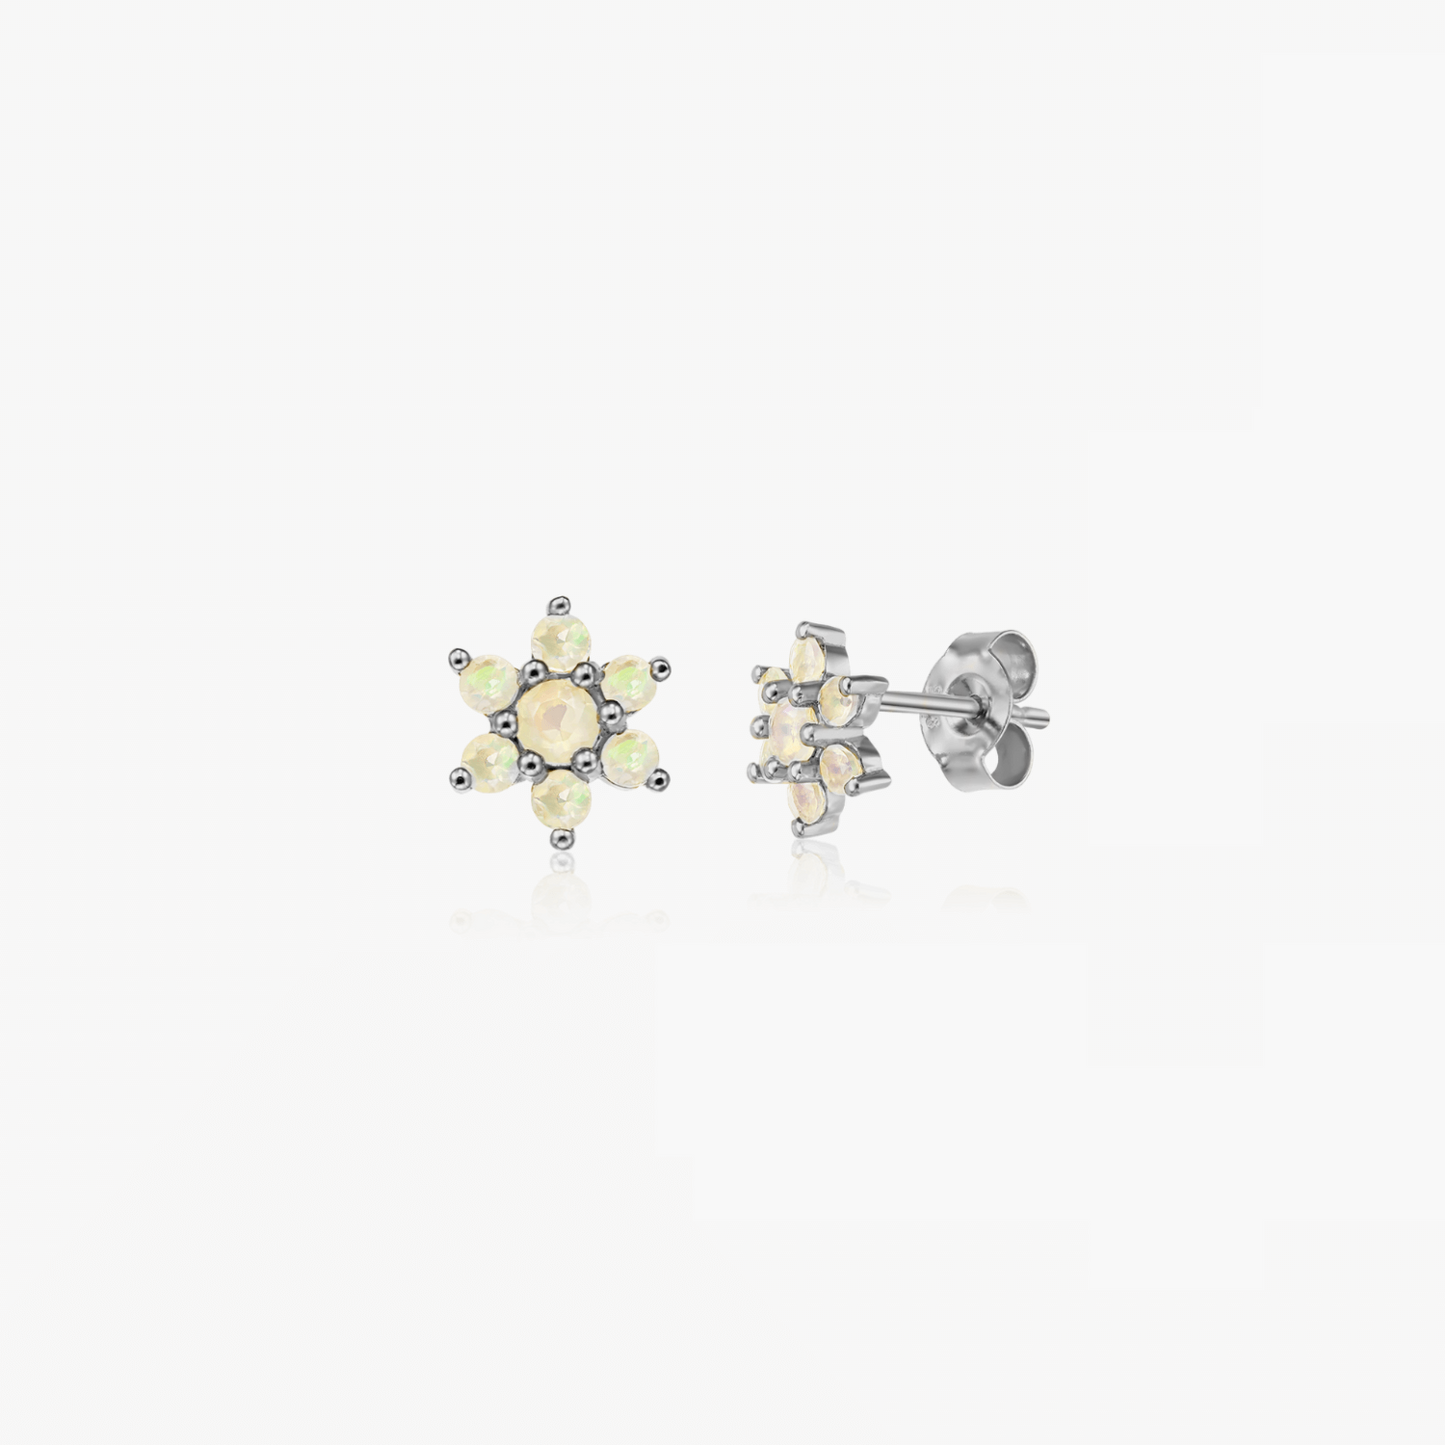 Golden Dahlia silver earrings - Opal